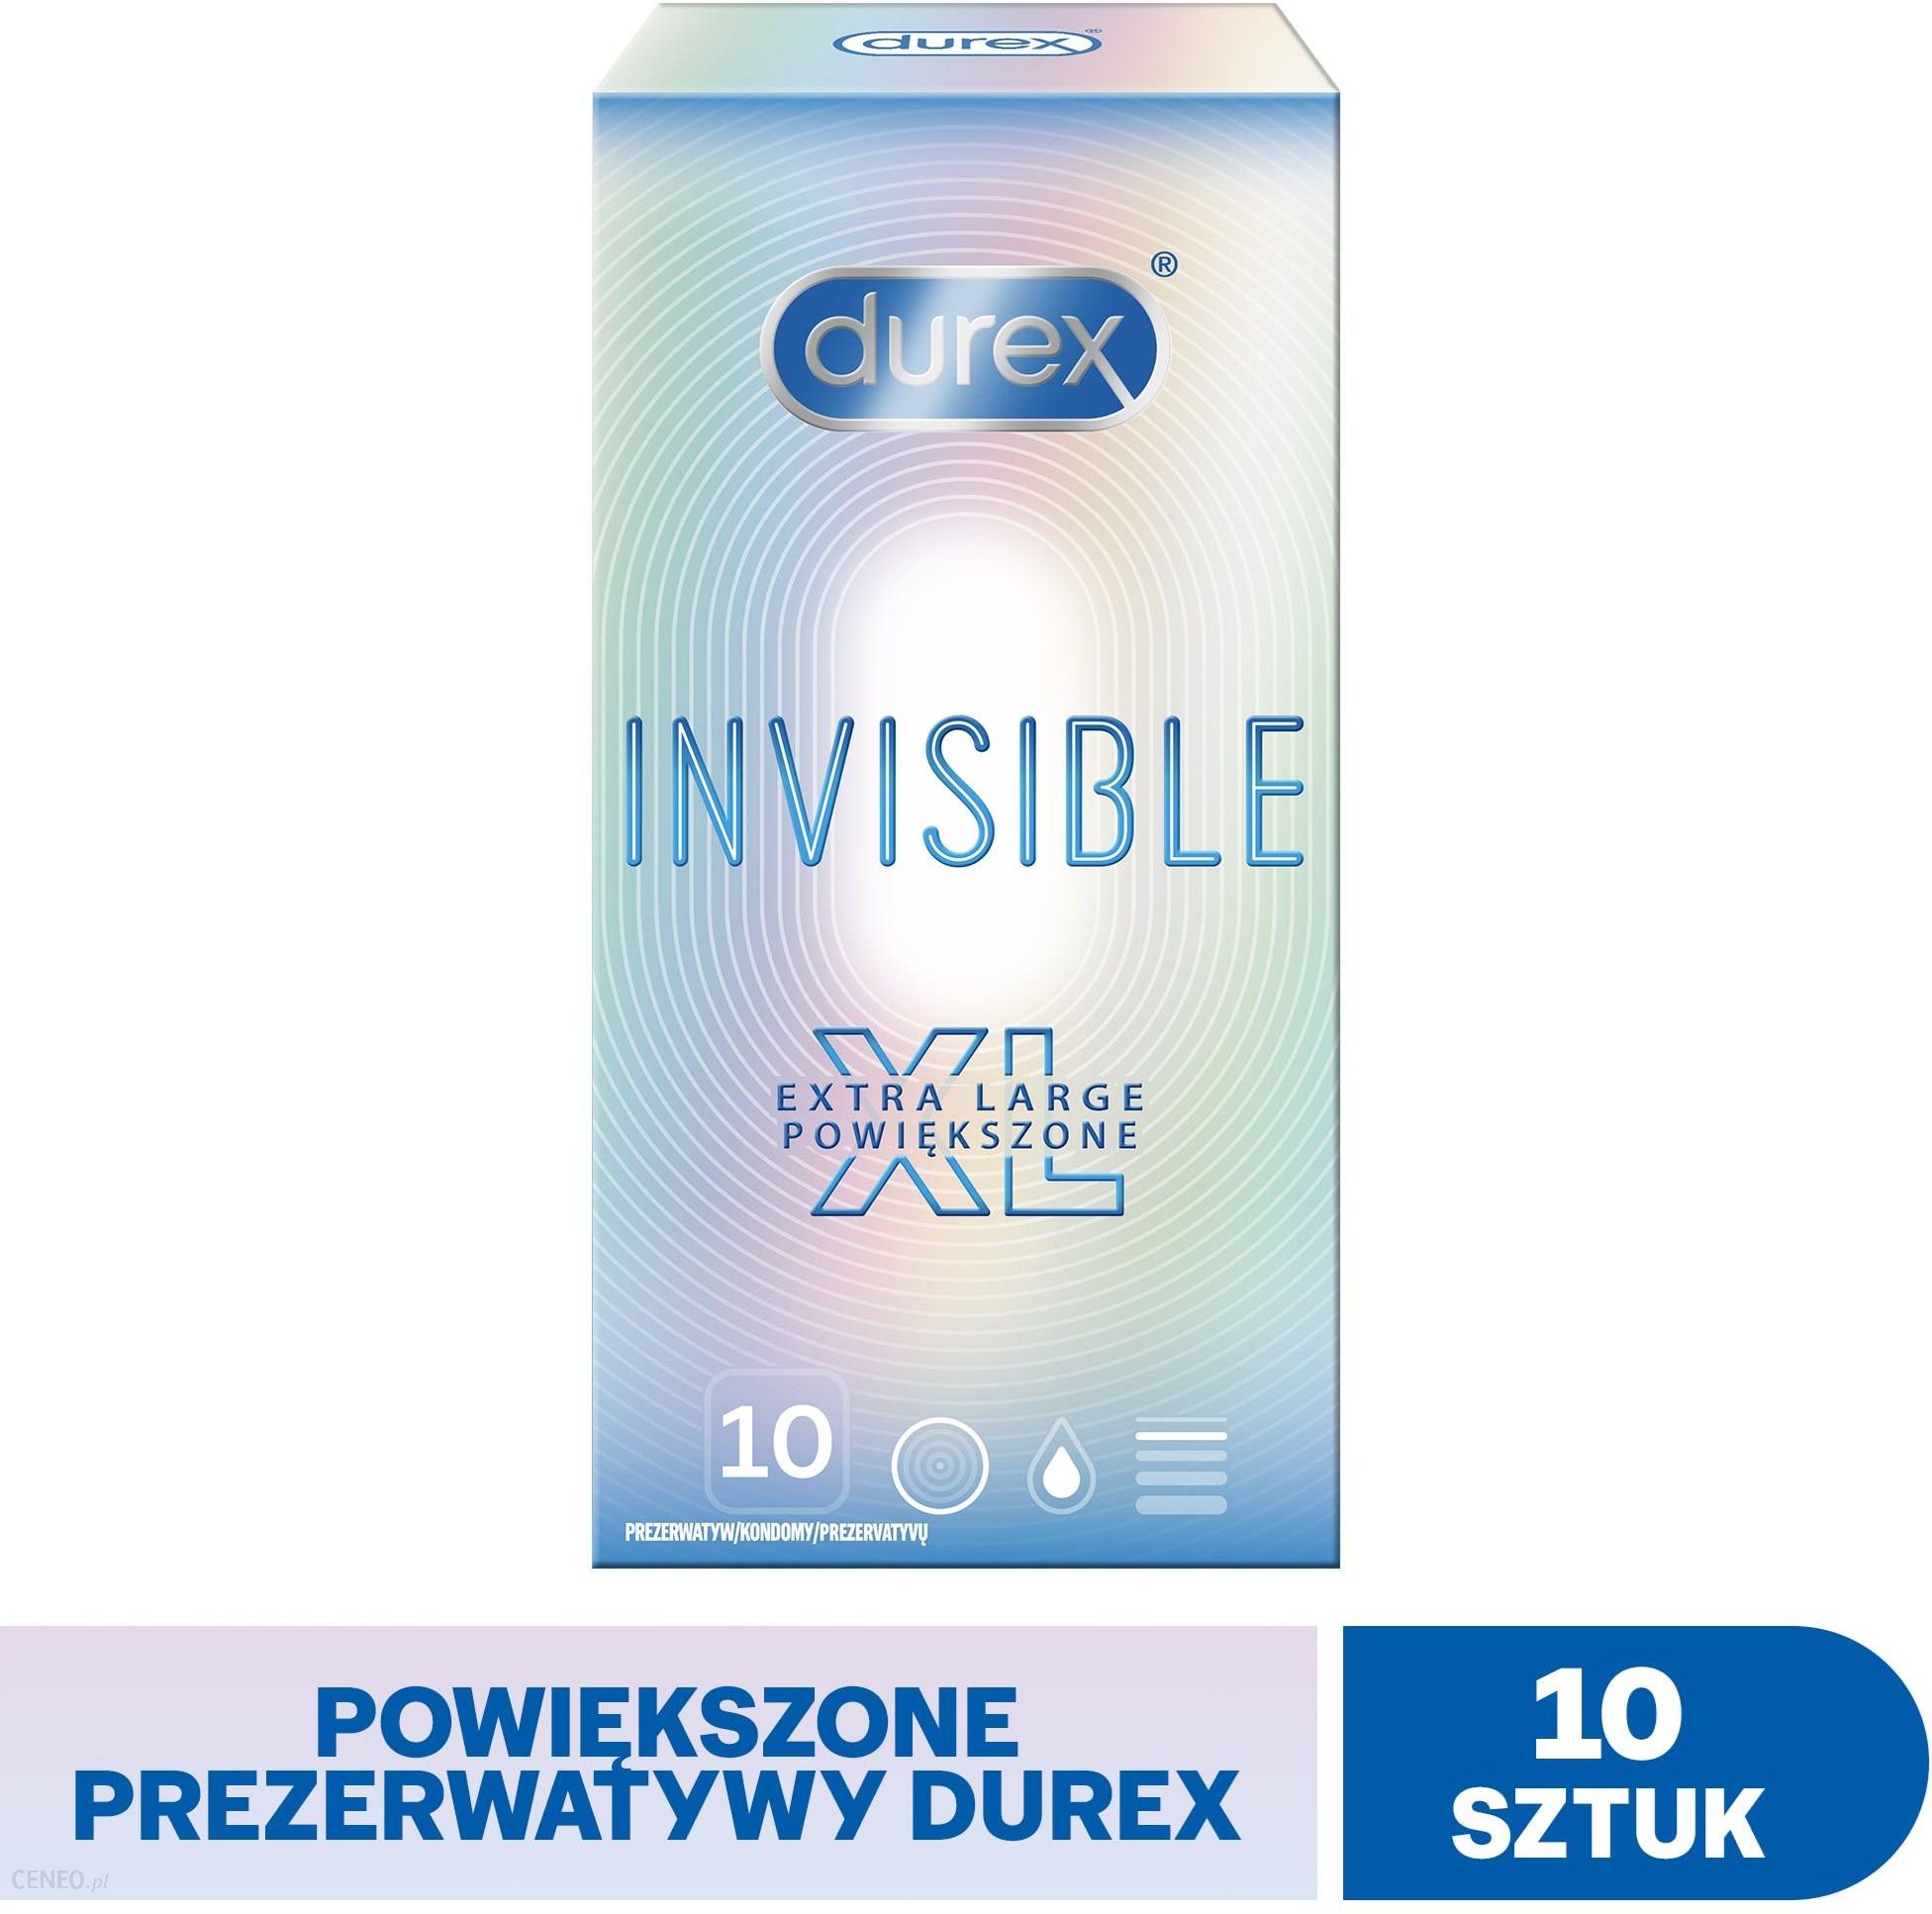 Durex Invisible Supercienkie XL Prezerwatywy extra powiększone  10 szt.